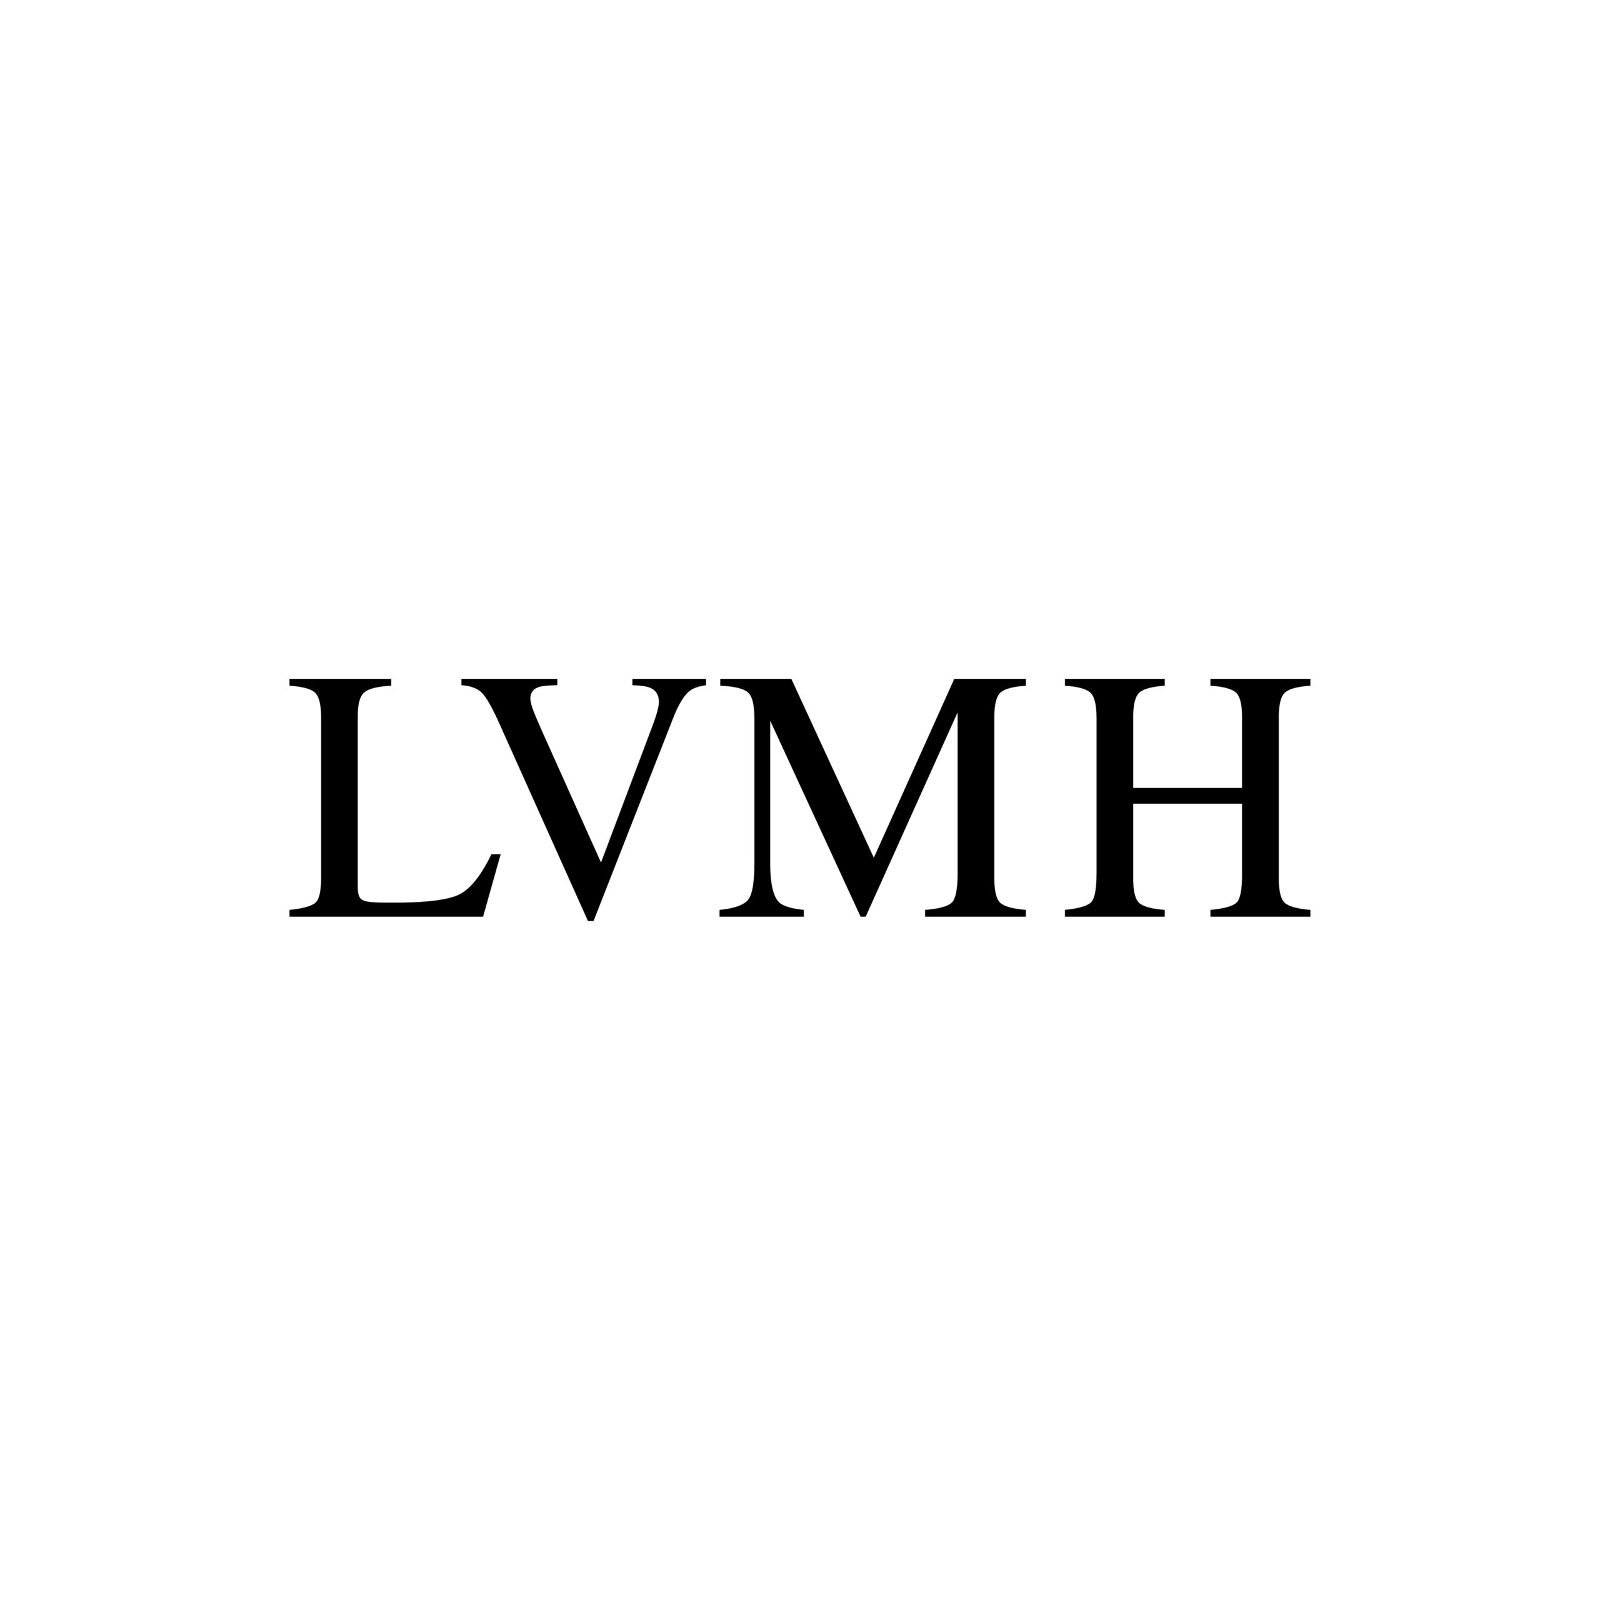 Lvmh logo vector scaled